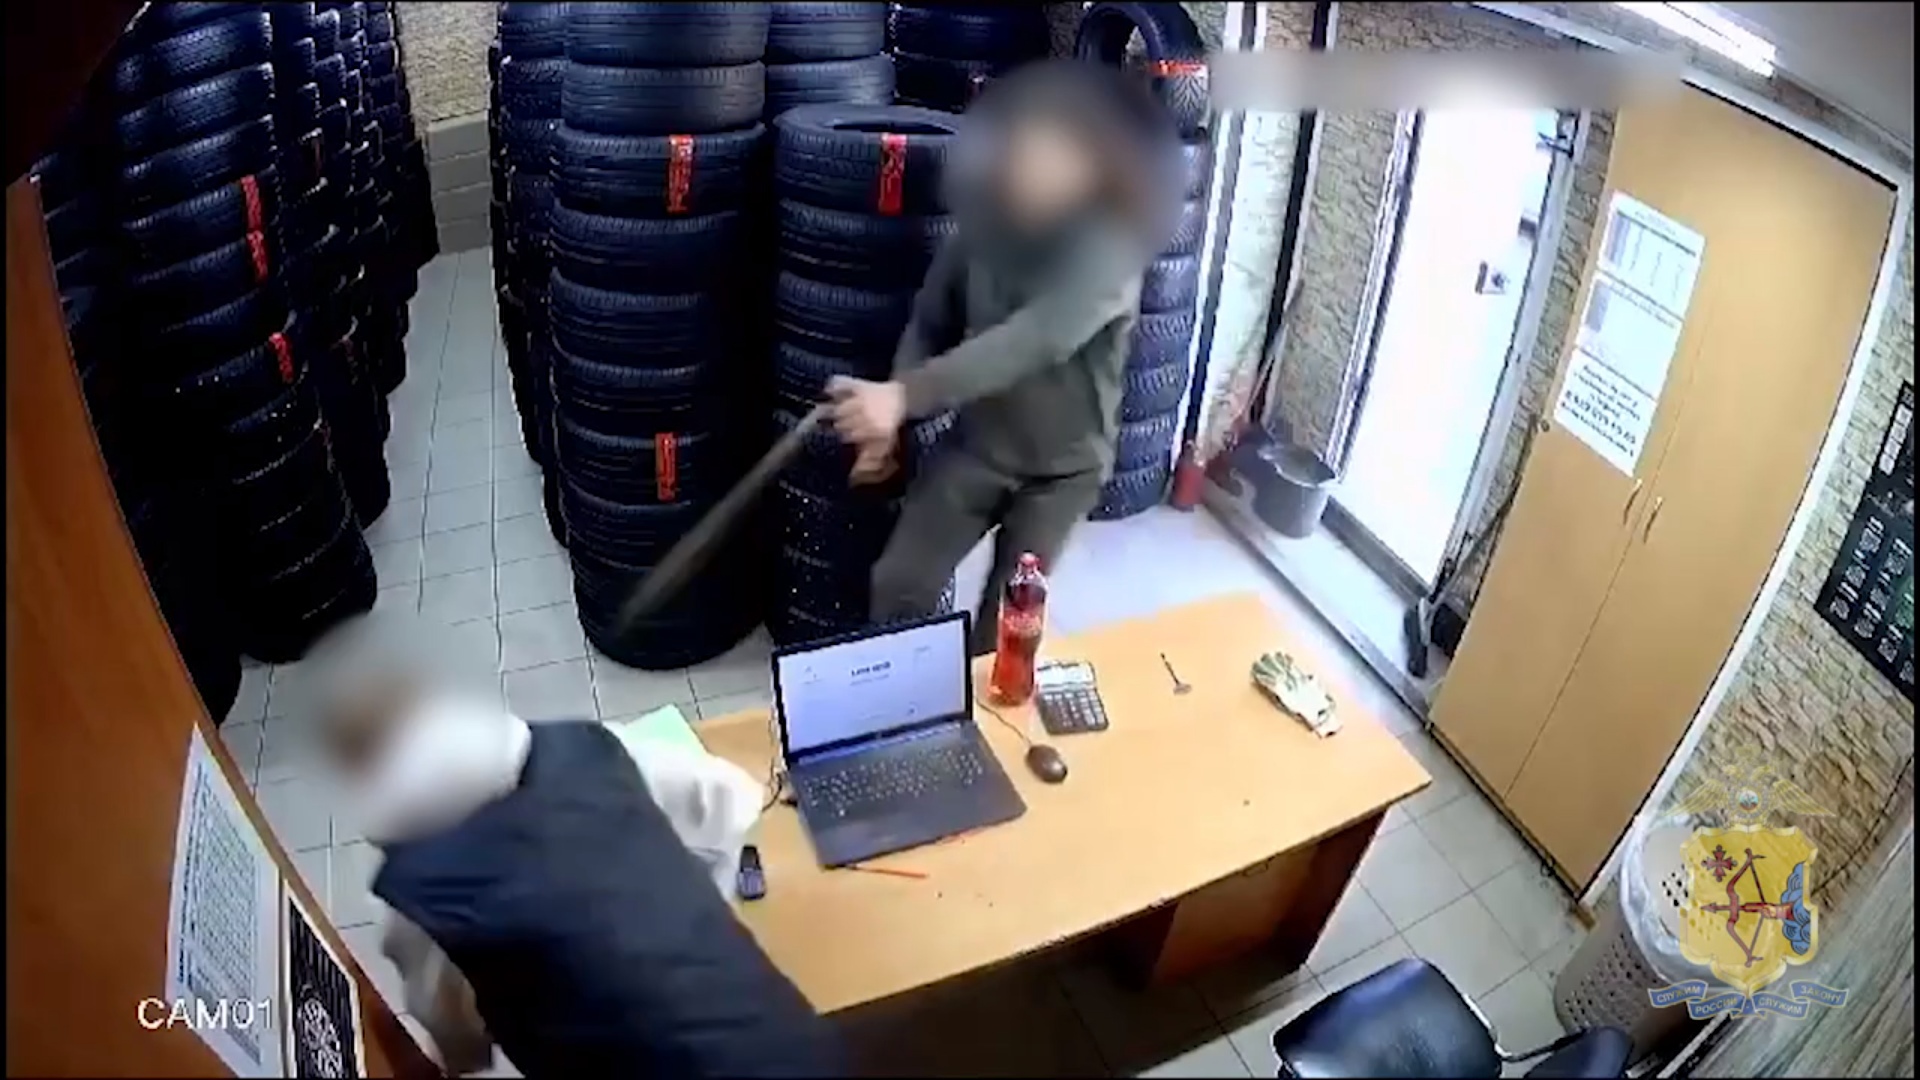 "Был на эмоциях": в Кирове сотрудник магазина автошин напал с ножом на коллегу